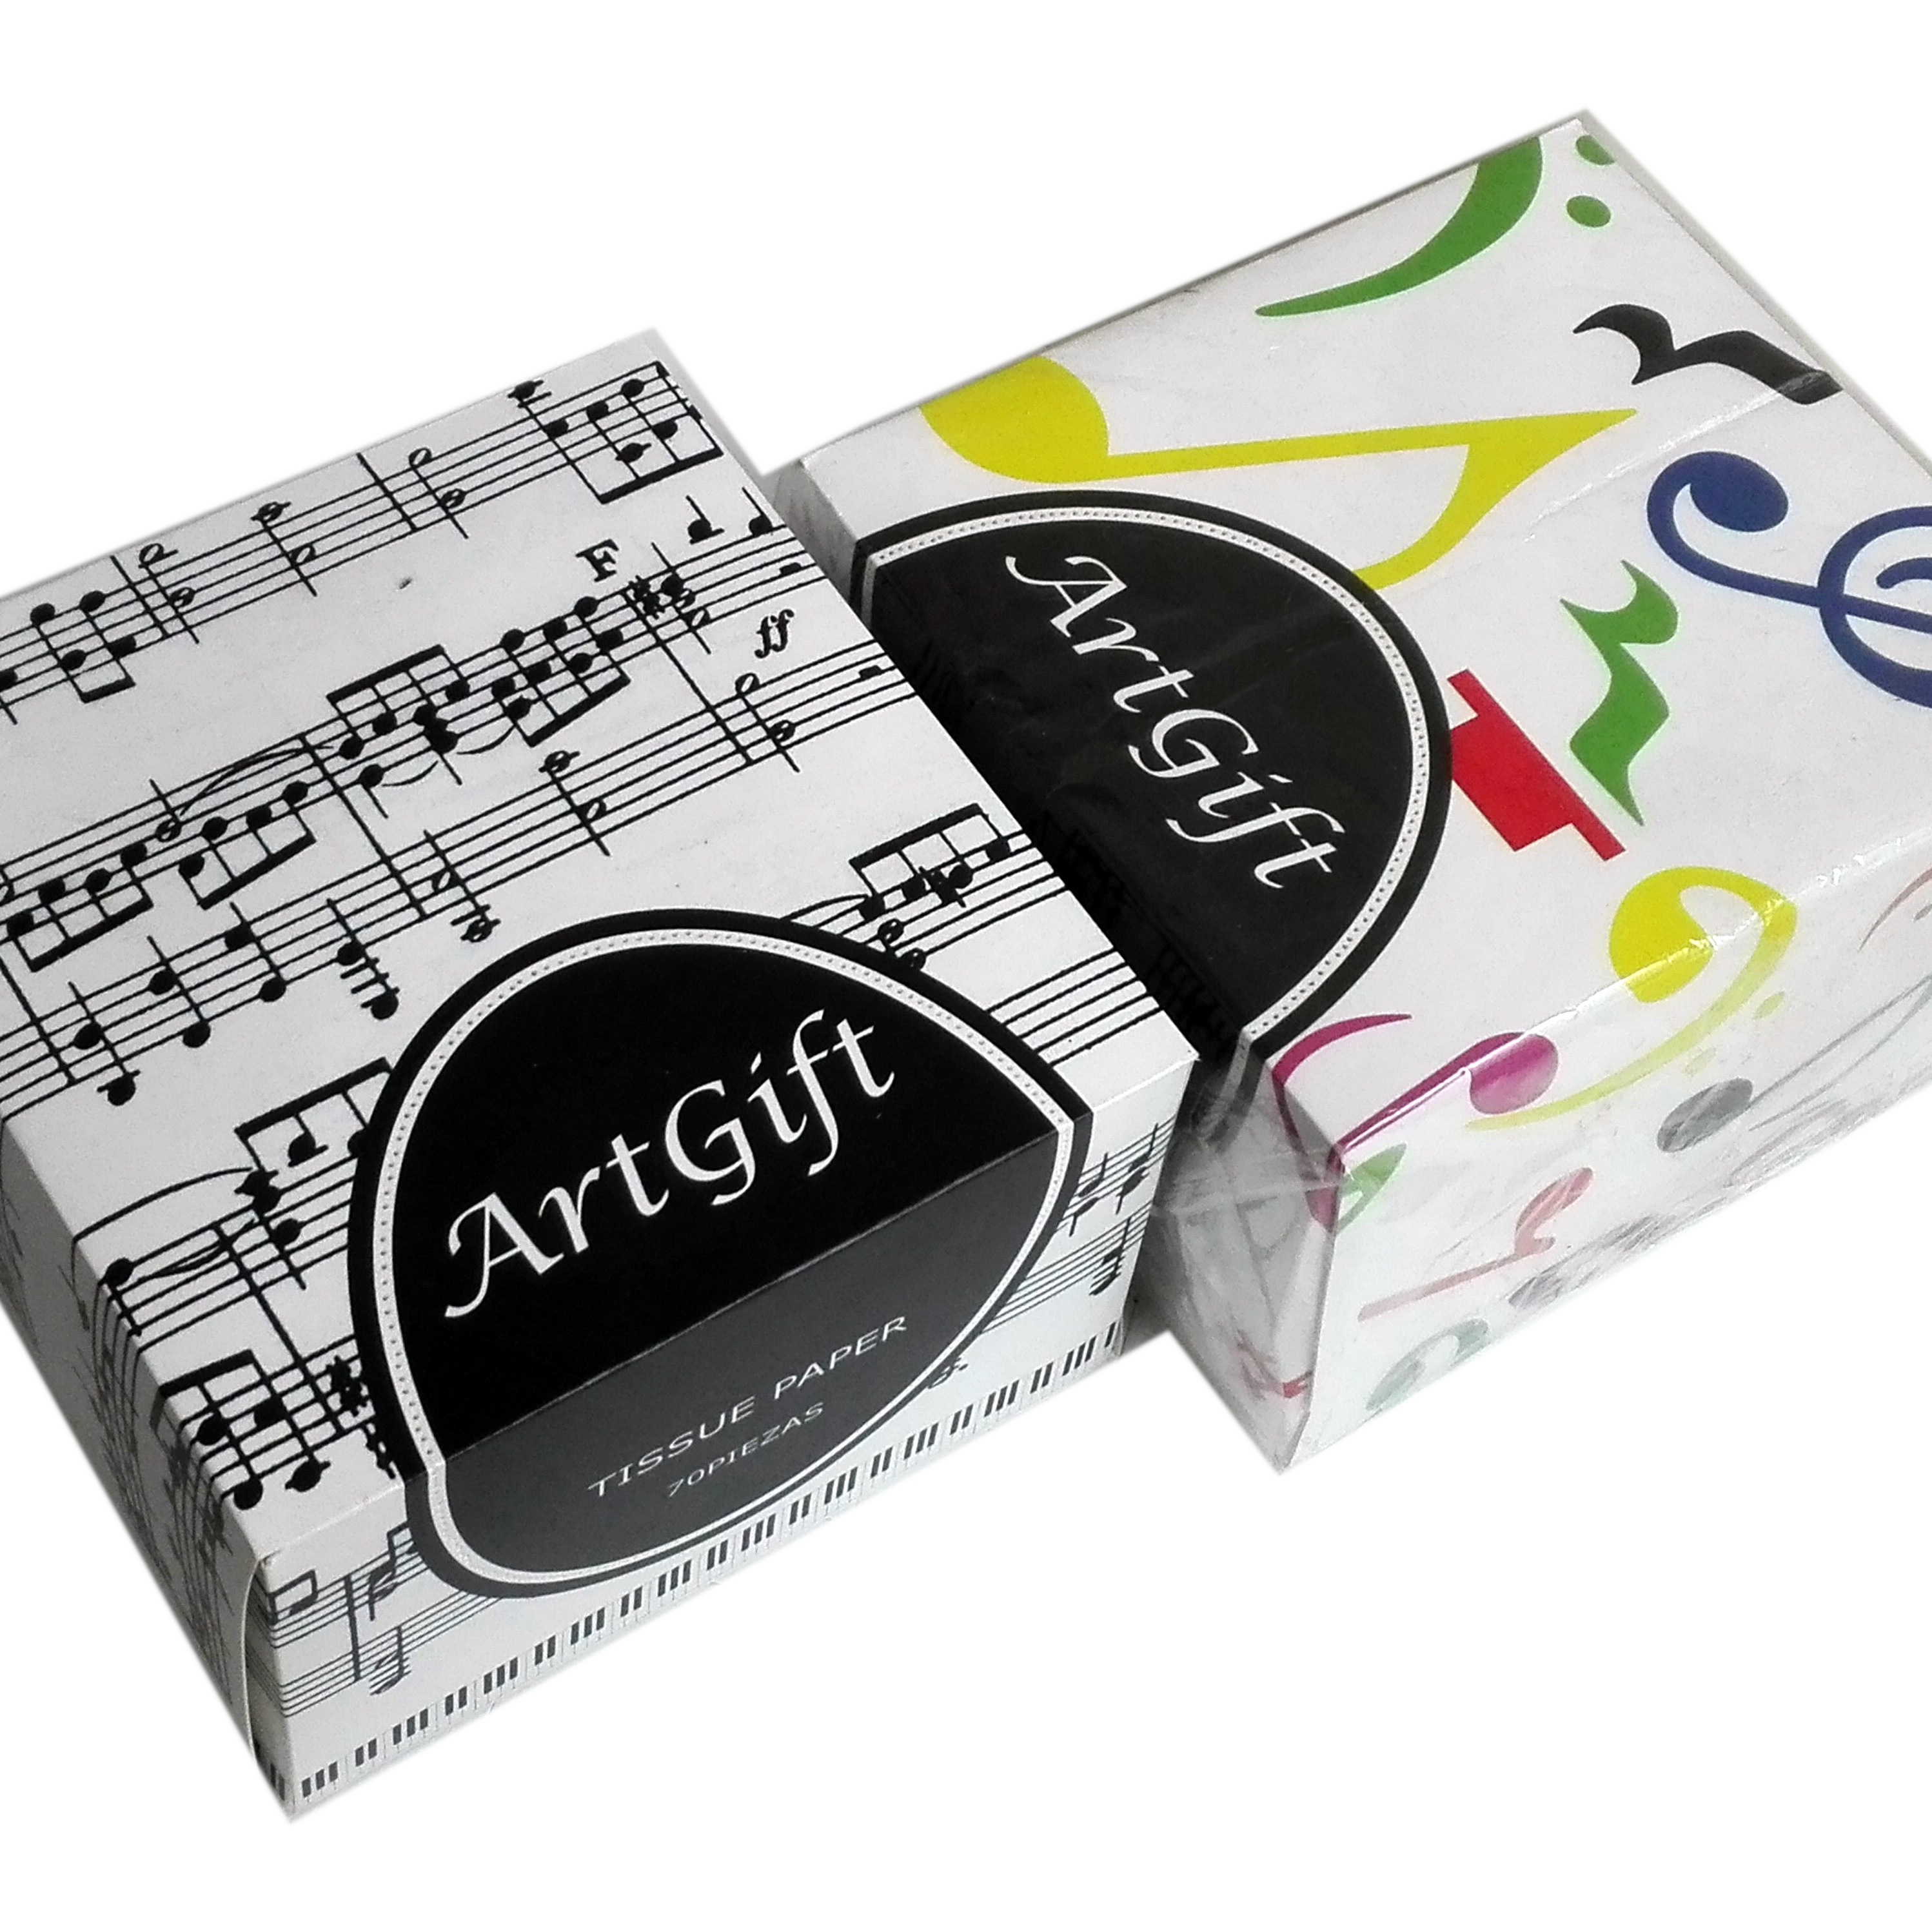 Cajas de pañuelos desechables decorada con notas musicales